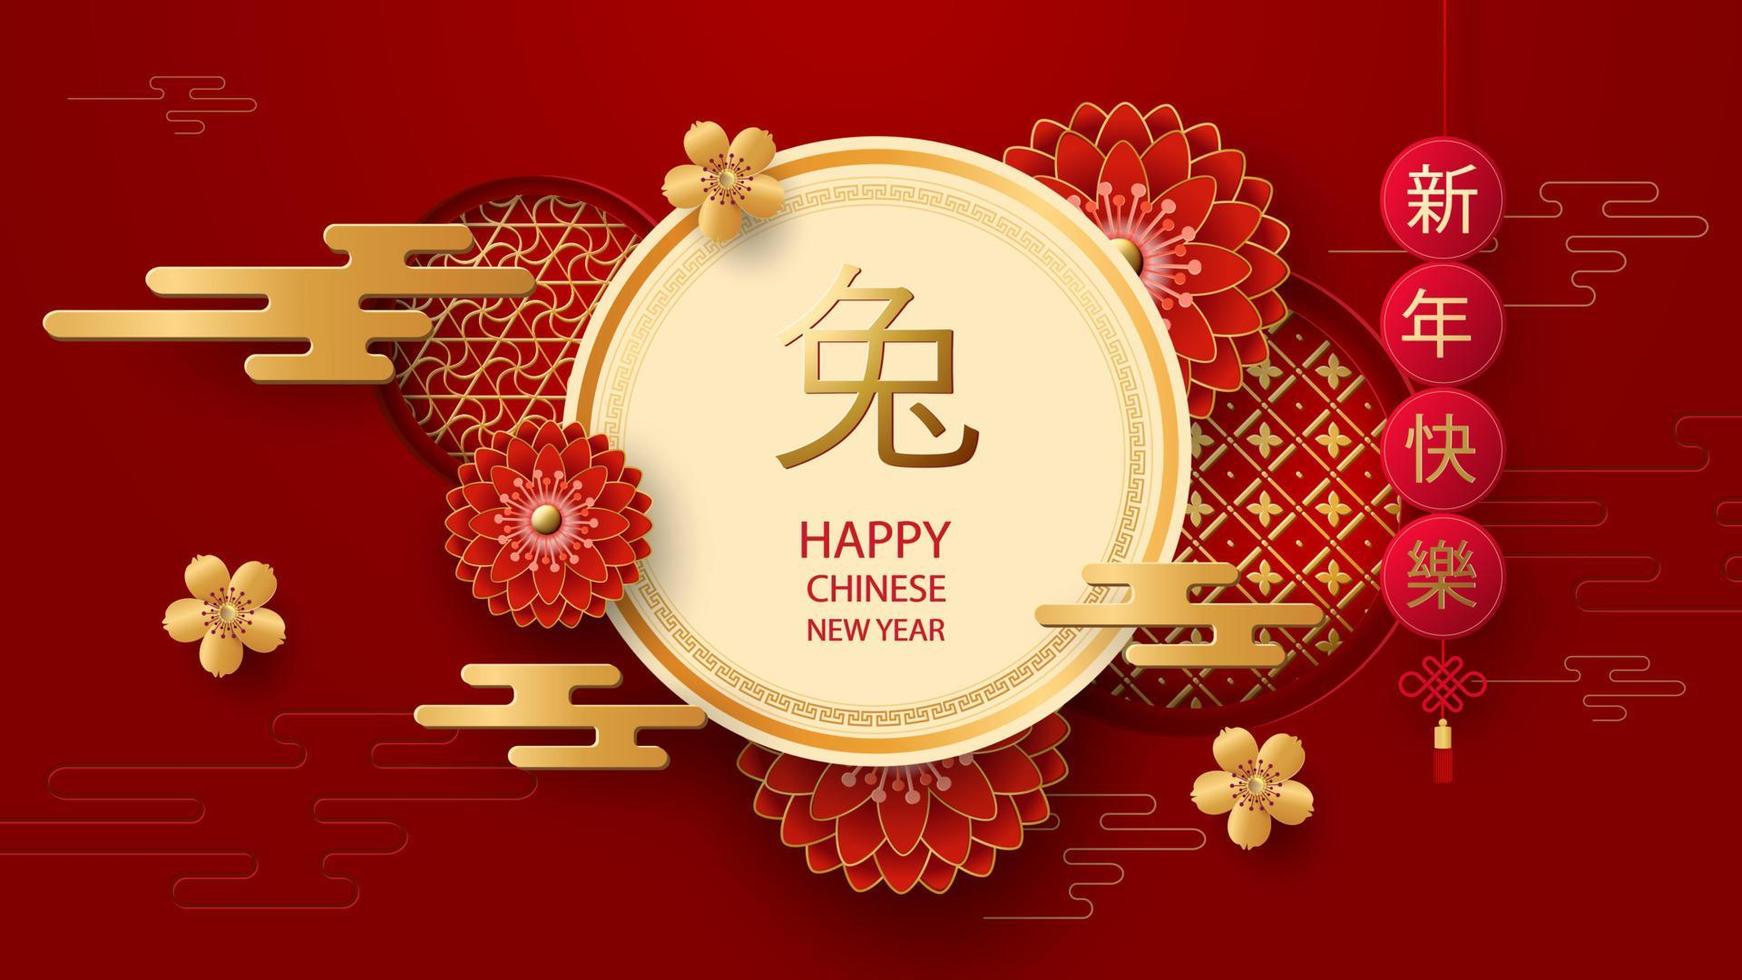 ano novo chinês 2023. lanternas, flores e elementos asiáticos tradução do chinês - feliz ano novo, coelhinho. ilustração vetorial vetor